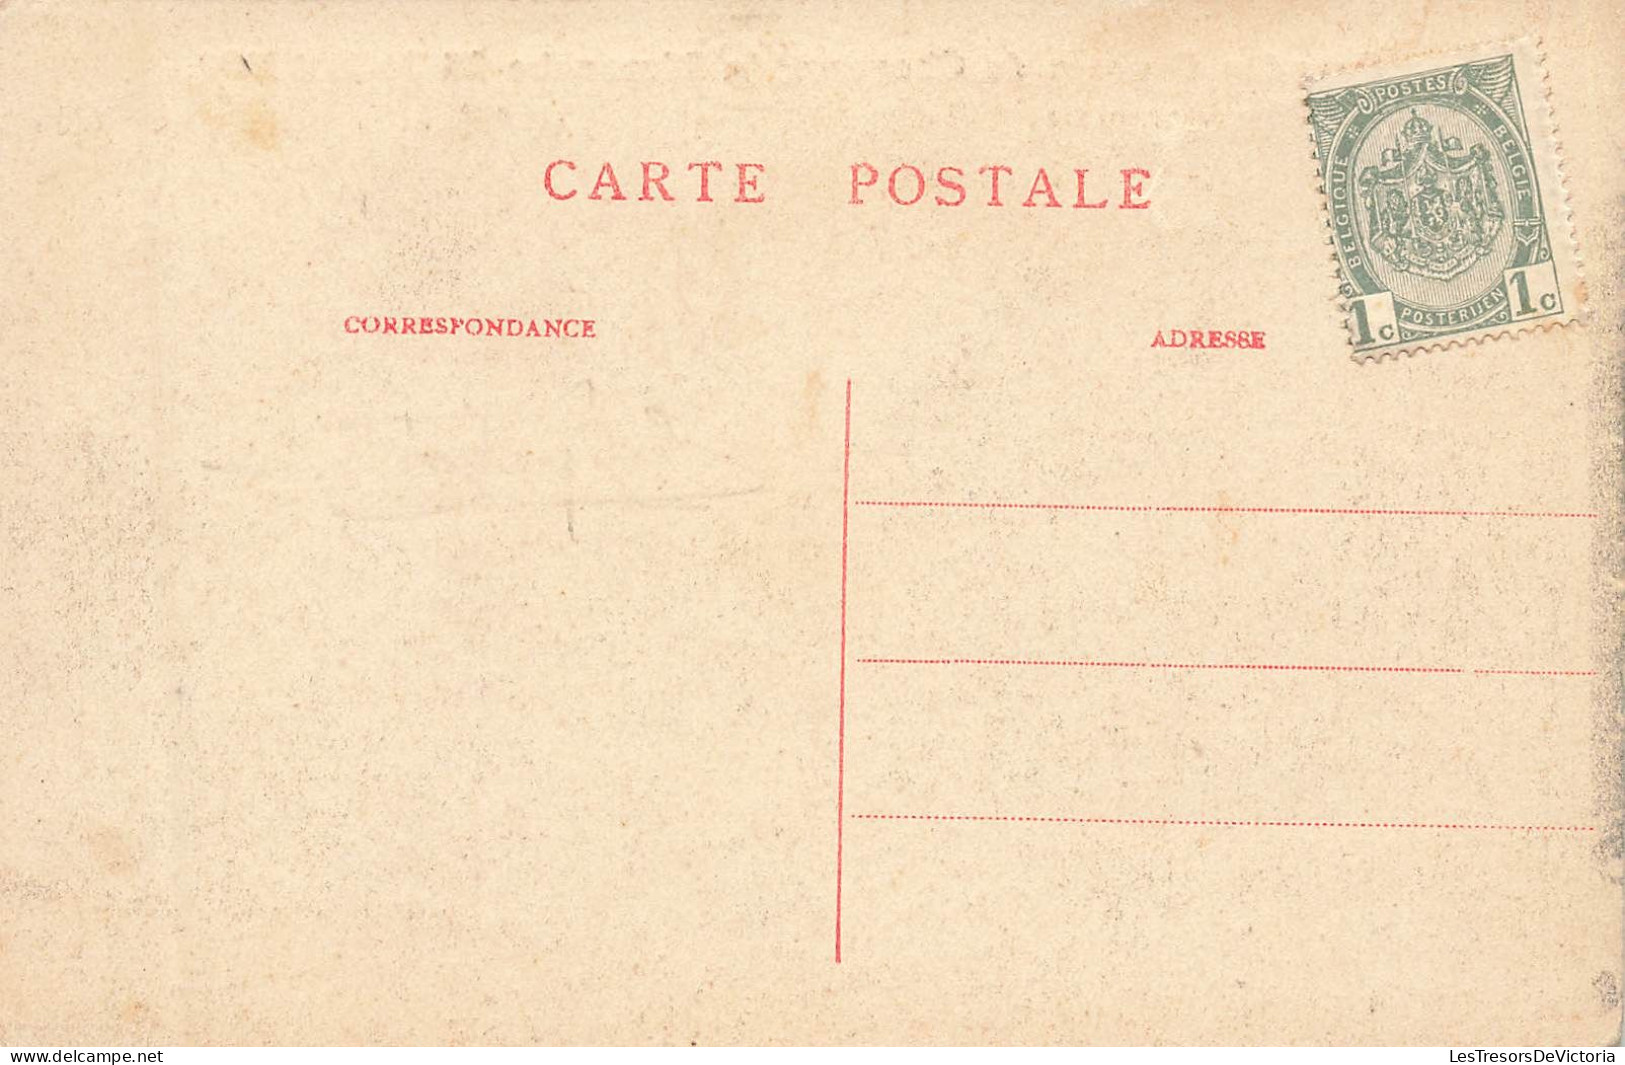 Belgique - Waremme - Grandes Courses De Chevaux Le Dimanche 25 Juillet 1909 - Dumont - Carte Postale Ancienne - Waremme